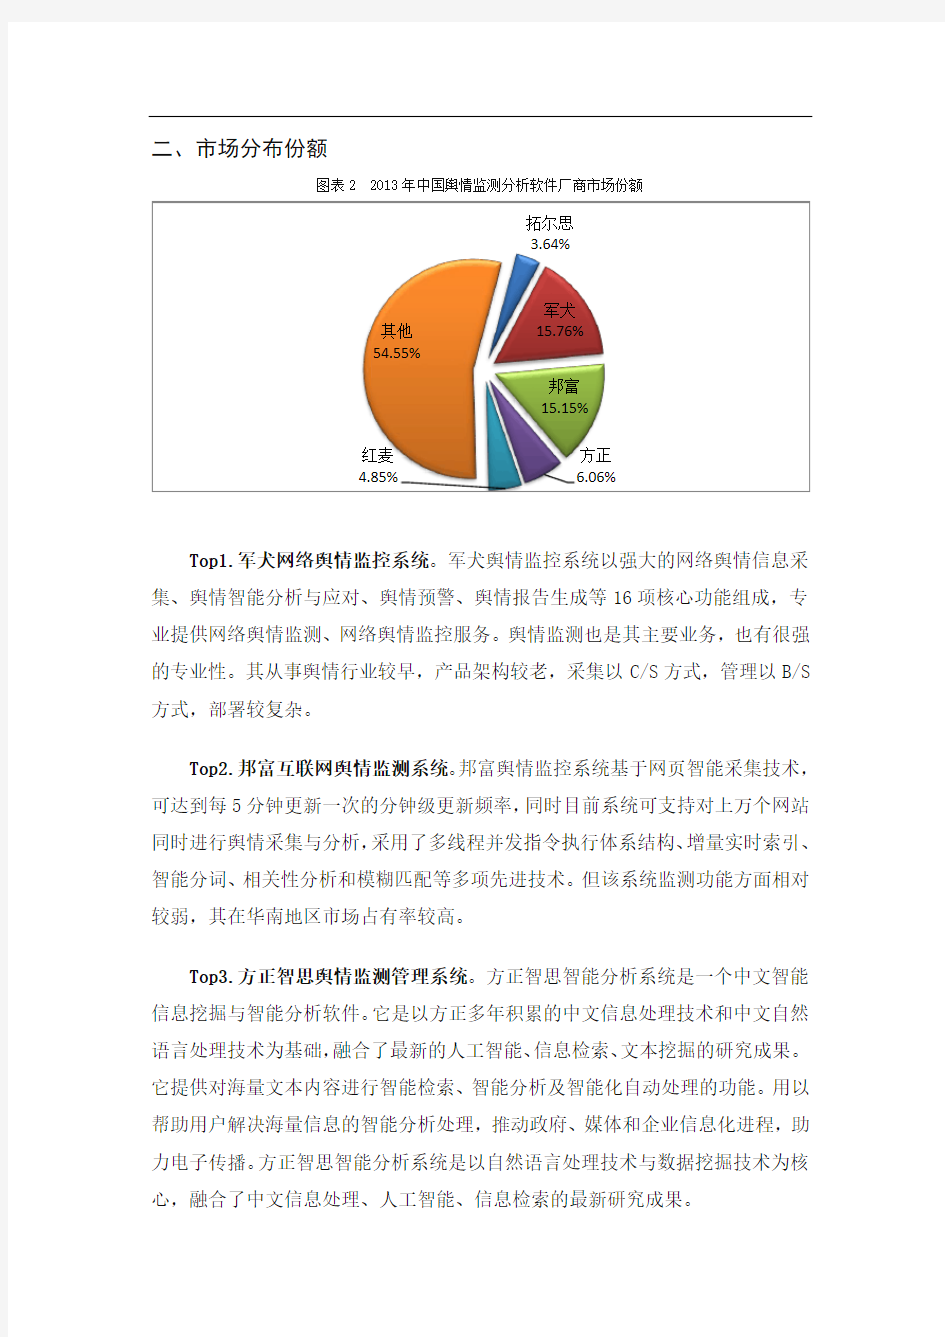 中国舆情监测行业市场份额总体状况分析